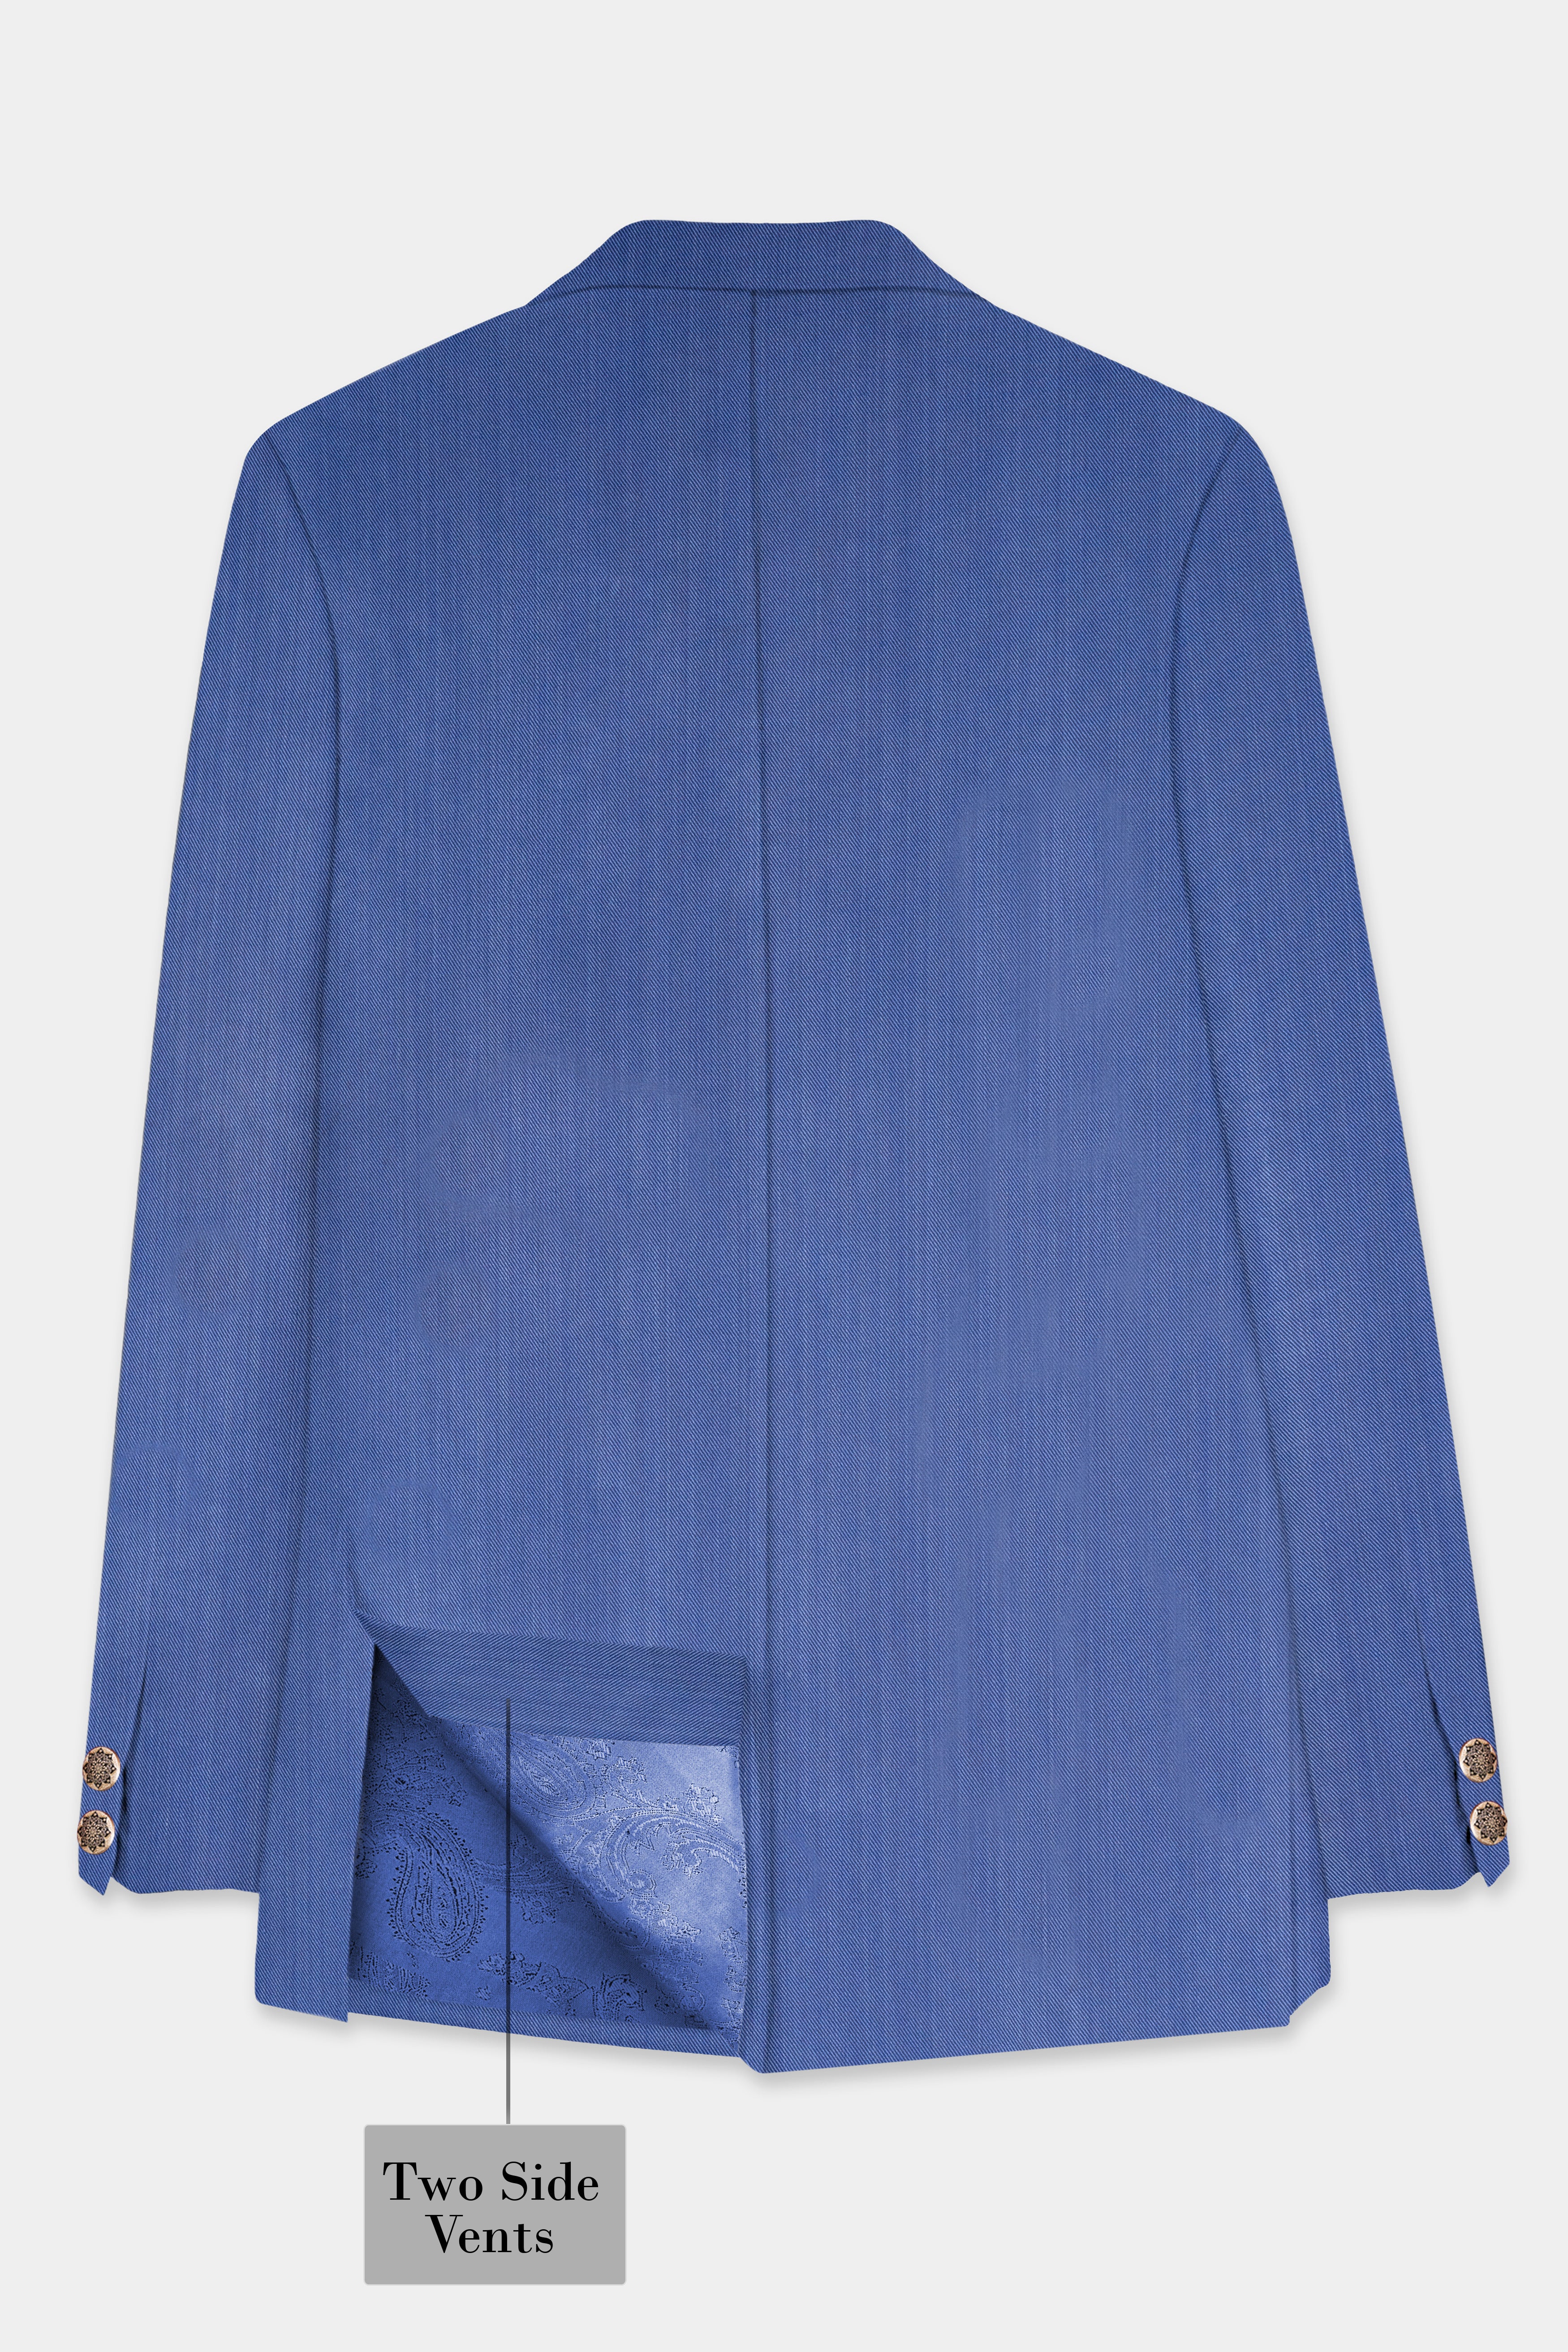 Twilight Blue Premium Cotton Cross Placket Bandhgala Suit